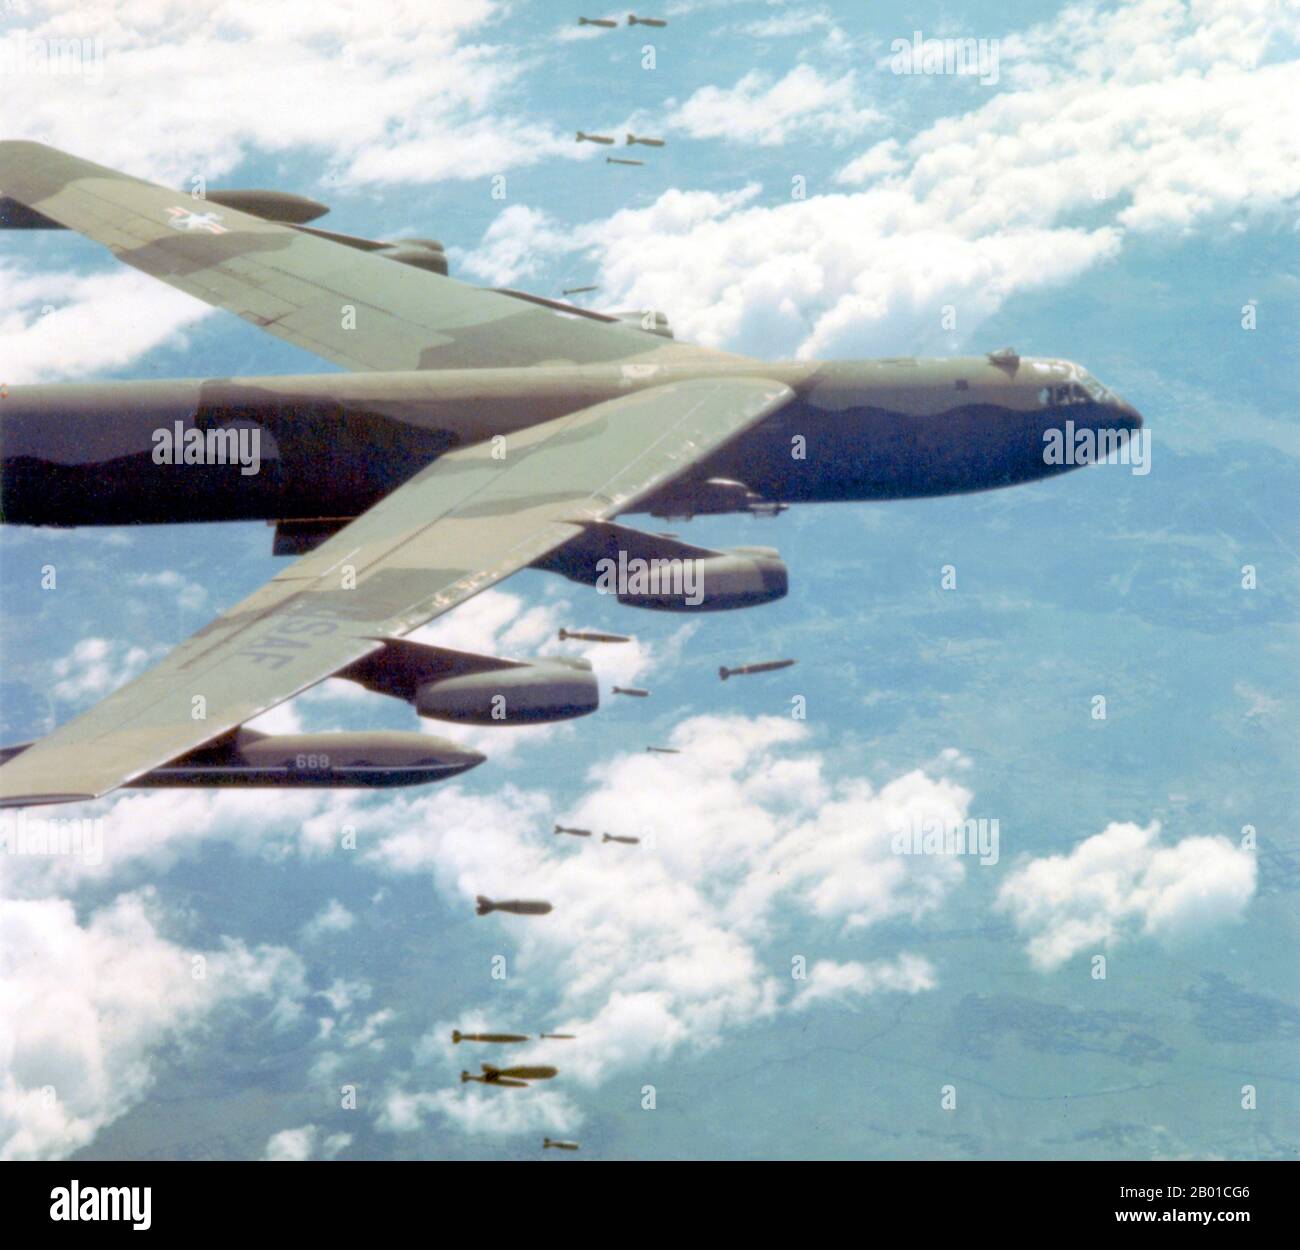 Vietnam: Un Boeing B-52 de la Force aérienne américaine StratoFortress larguer des bombes au-dessus du Vietnam, c. 1965-1972. Cet avion a été frappé par le missile surface-air sa-2 au-dessus du nord du Vietnam lors de l'offensive 'linebacker II' le 31 décembre 1972 et s'est écrasé au Laos. L'équipage de six personnes a éjecté, mais seulement cinq ont été sauvés. L'opération linebacker II était une campagne de bombardement aérien de la septième Force aérienne des États-Unis et de la Force opérationnelle de la Marine américaine 77, menée contre des cibles en République démocratique du Vietnam (nord du Vietnam) au cours de la dernière période d'implication des États-Unis dans la guerre du Vietnam. Banque D'Images